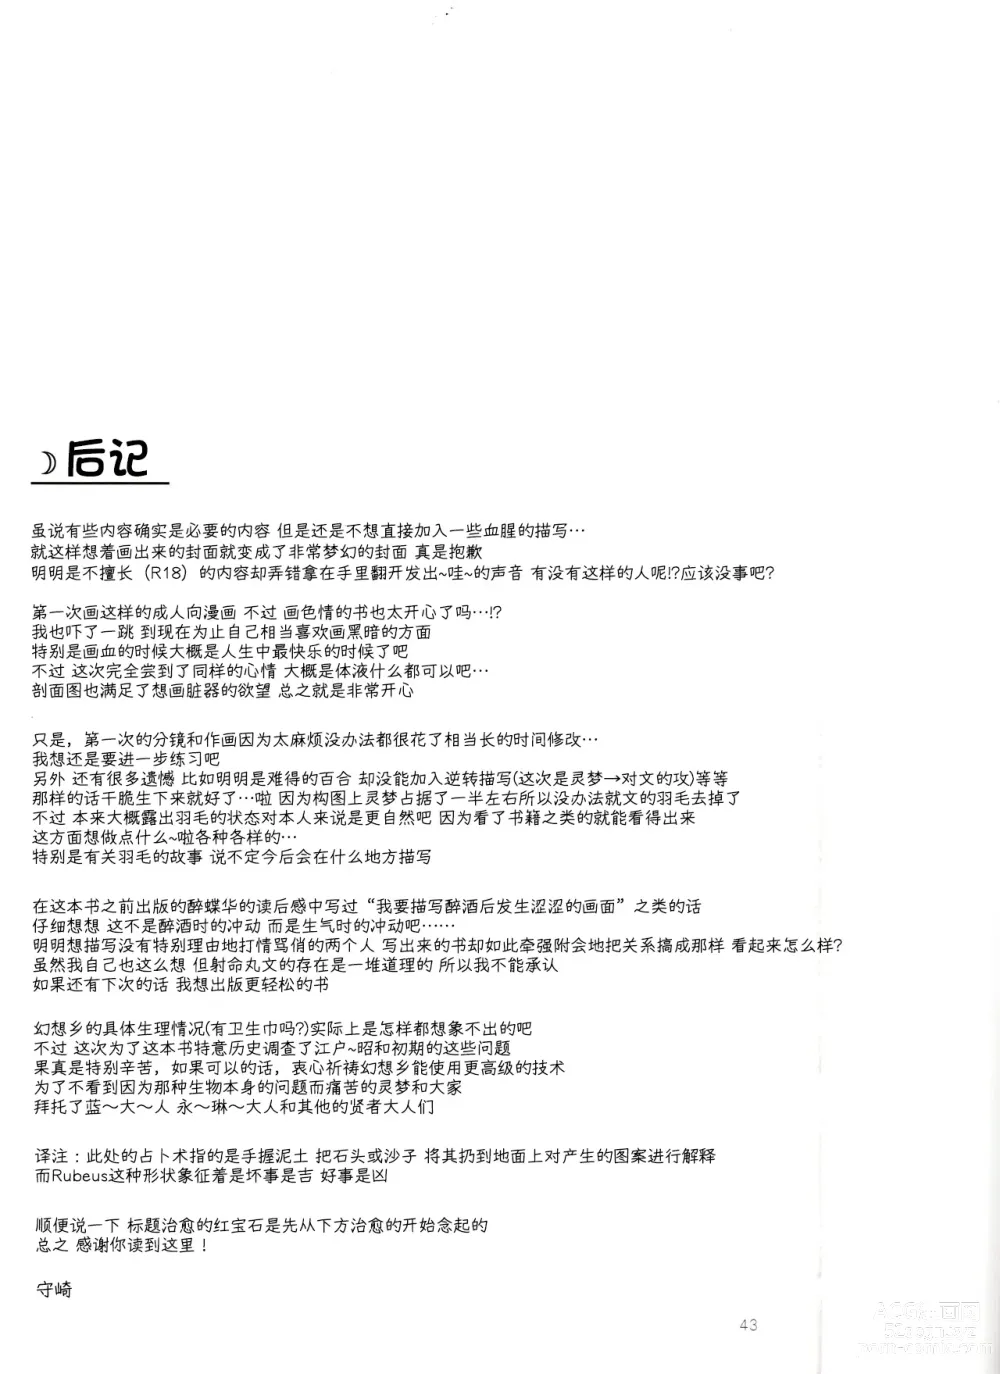 Page 42 of doujinshi Rubeus no Kankai